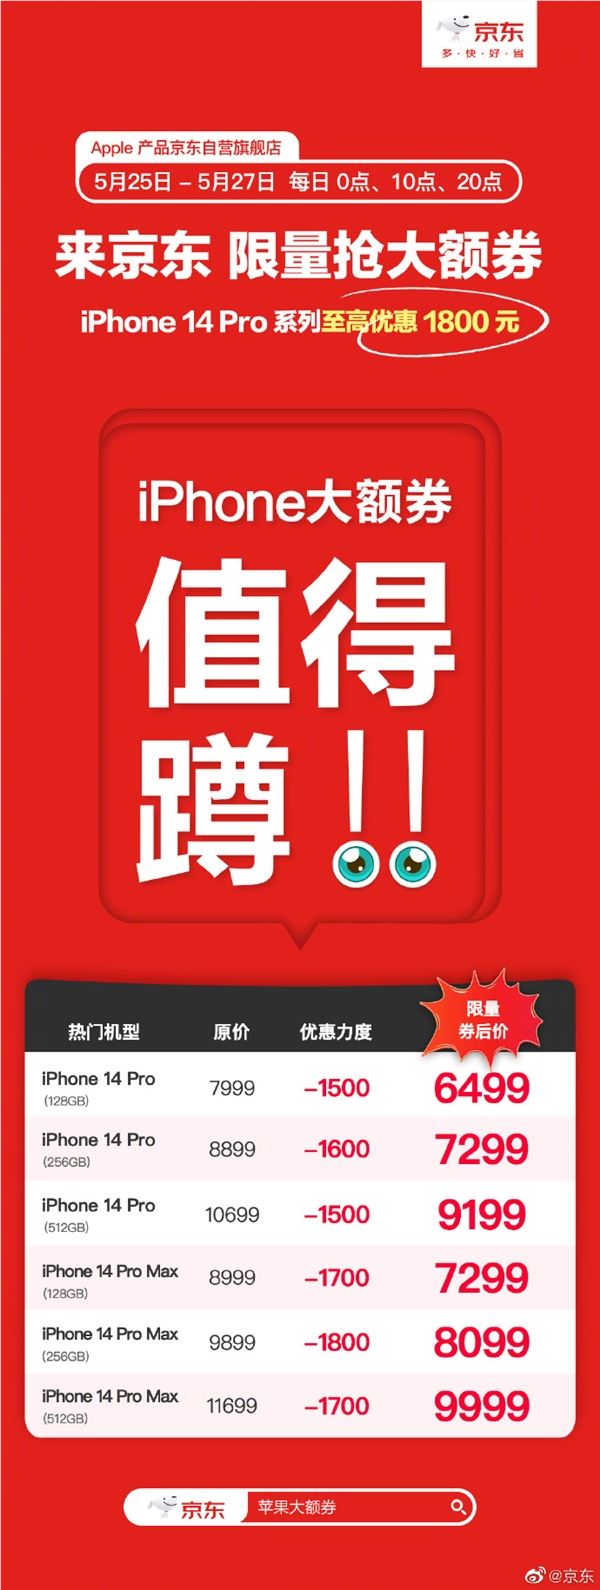 京东618上线“苹果大额券” iPhone14Pro 系列至高优惠1800元